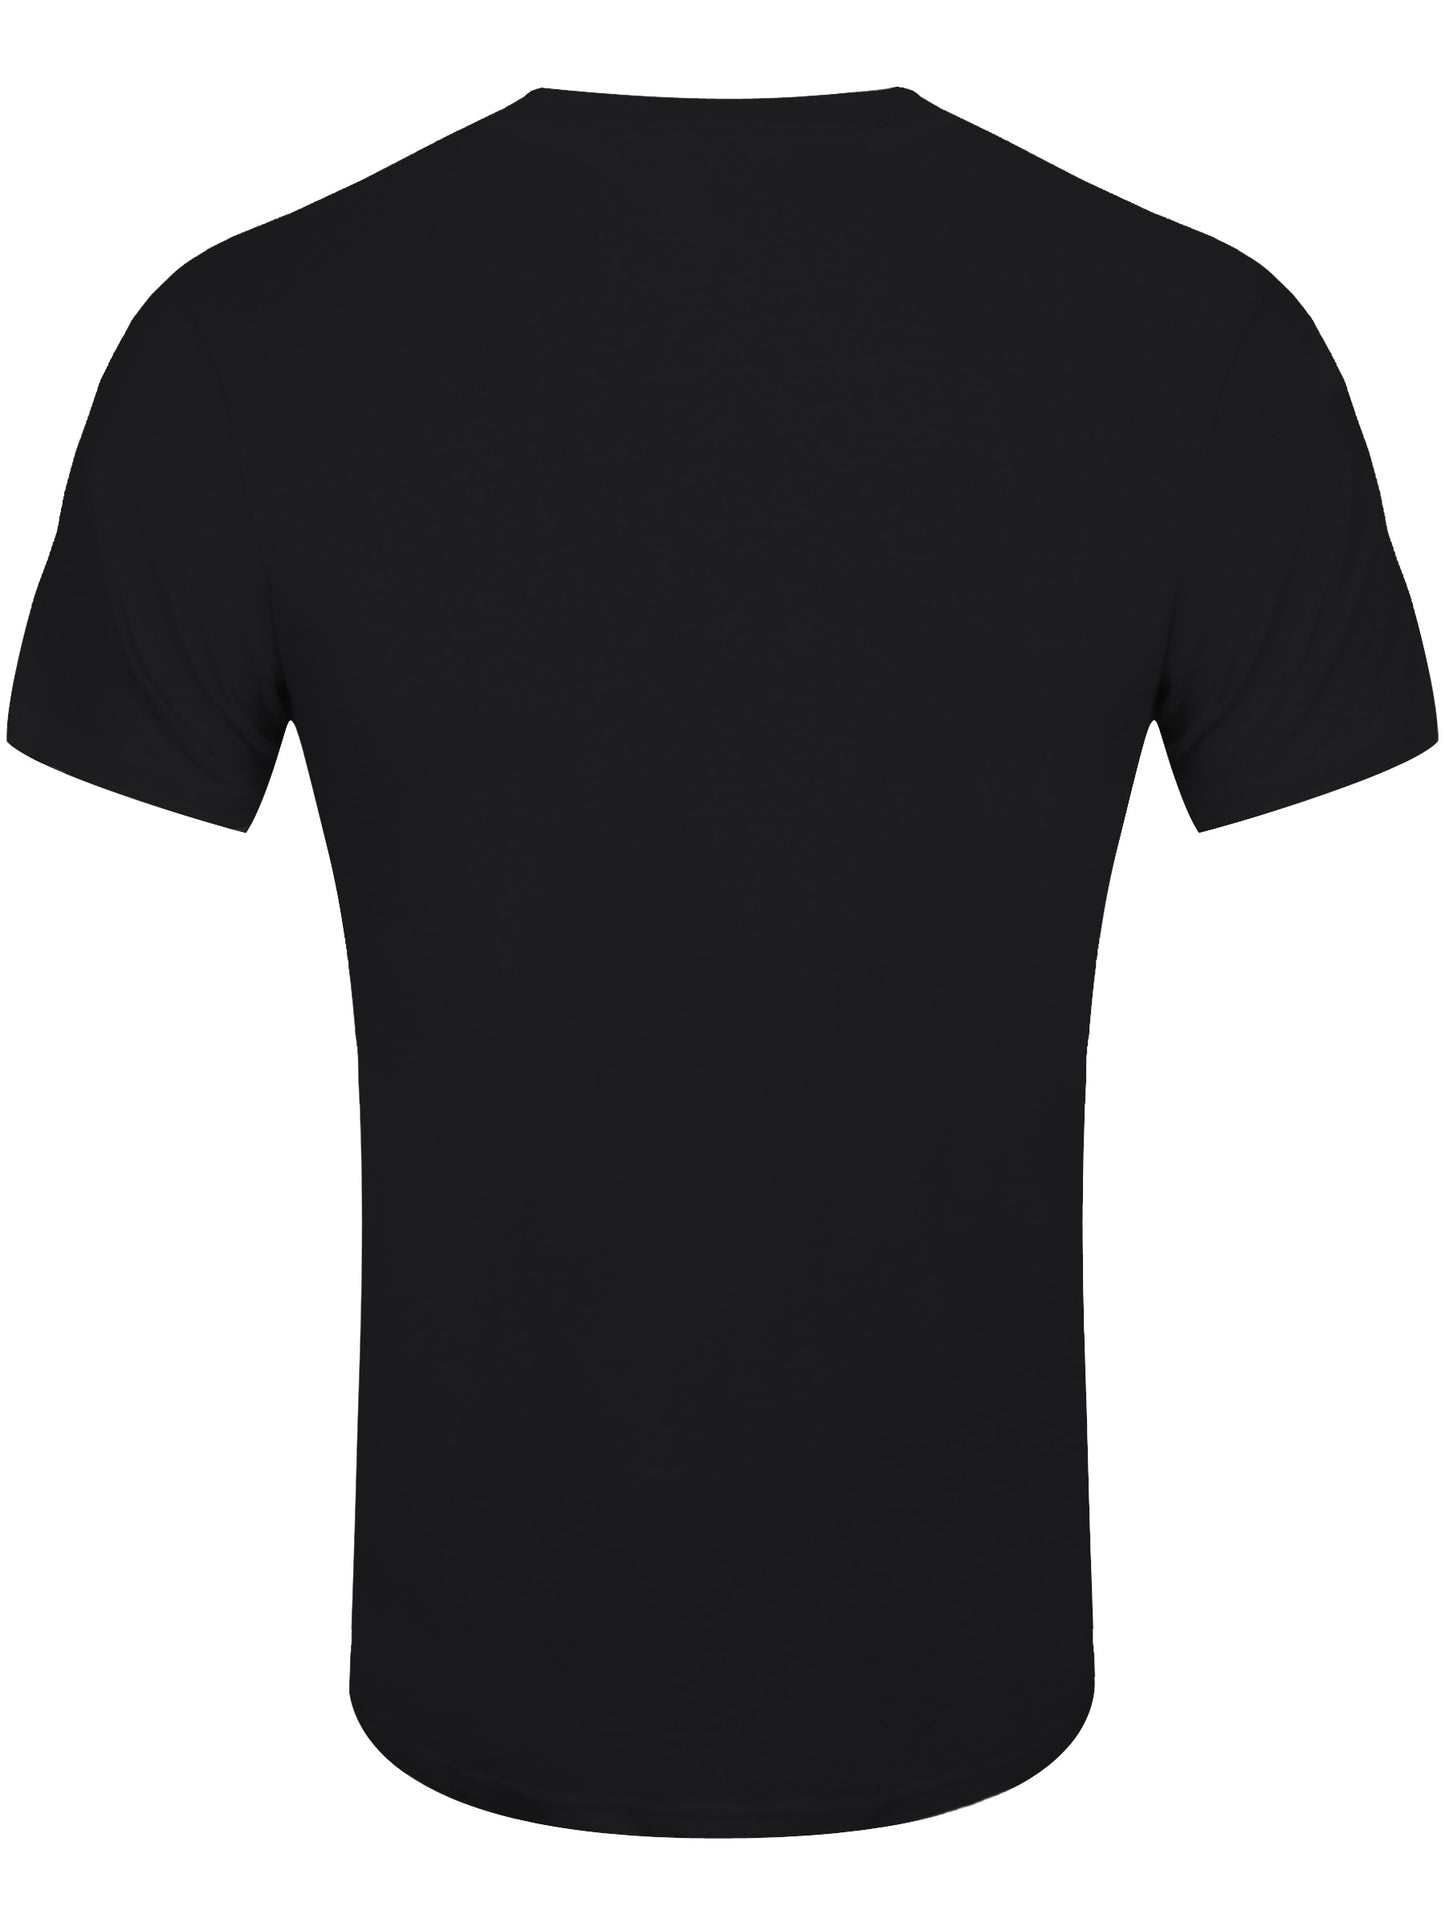 Back To The Future Portal Men's Black T-Shirt